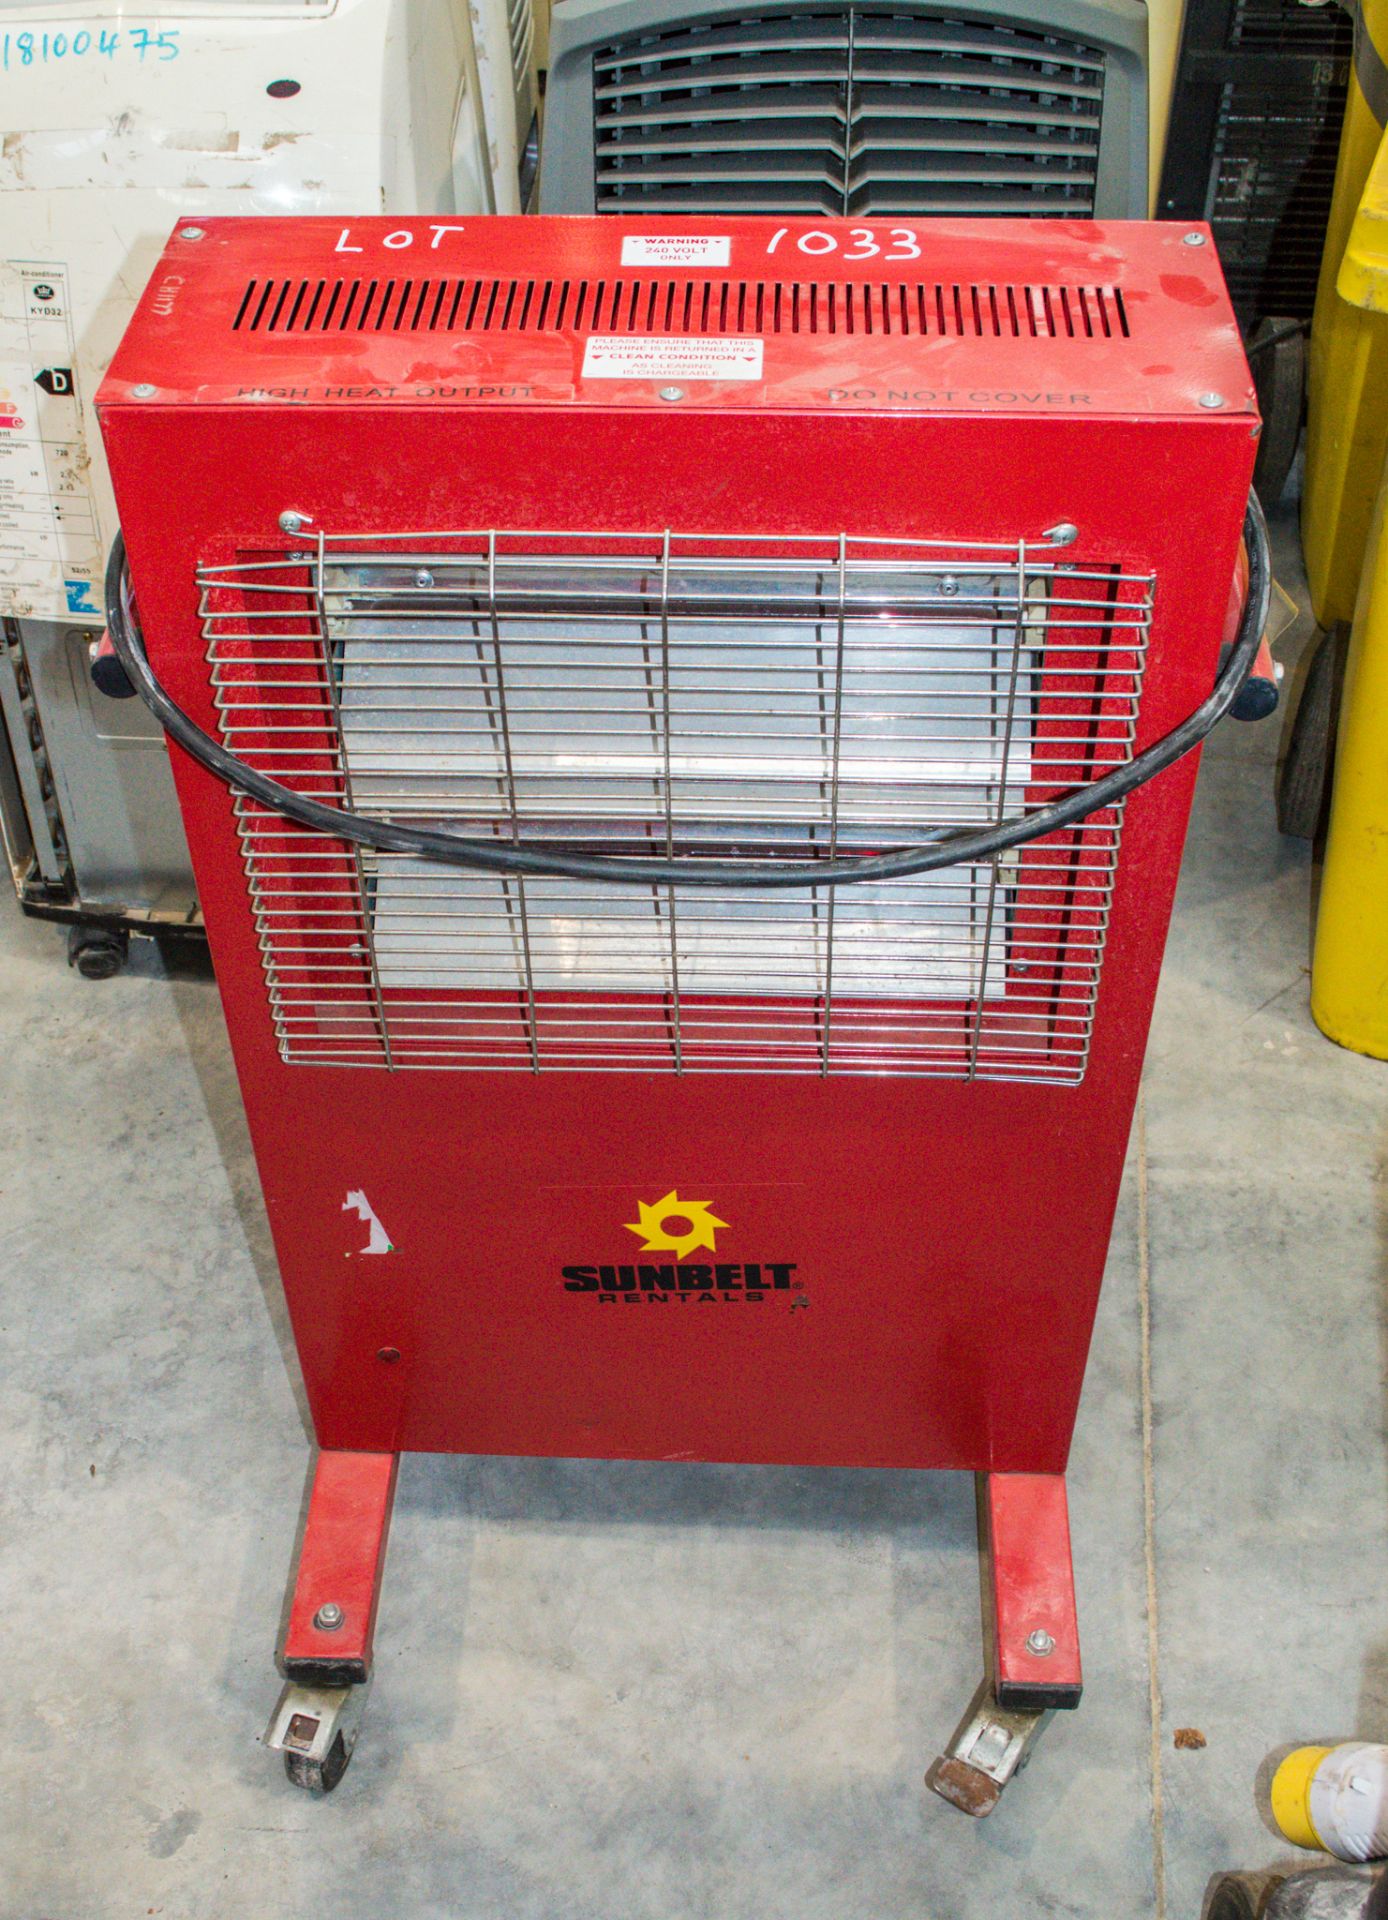 Elite Heat 240v infrared heater